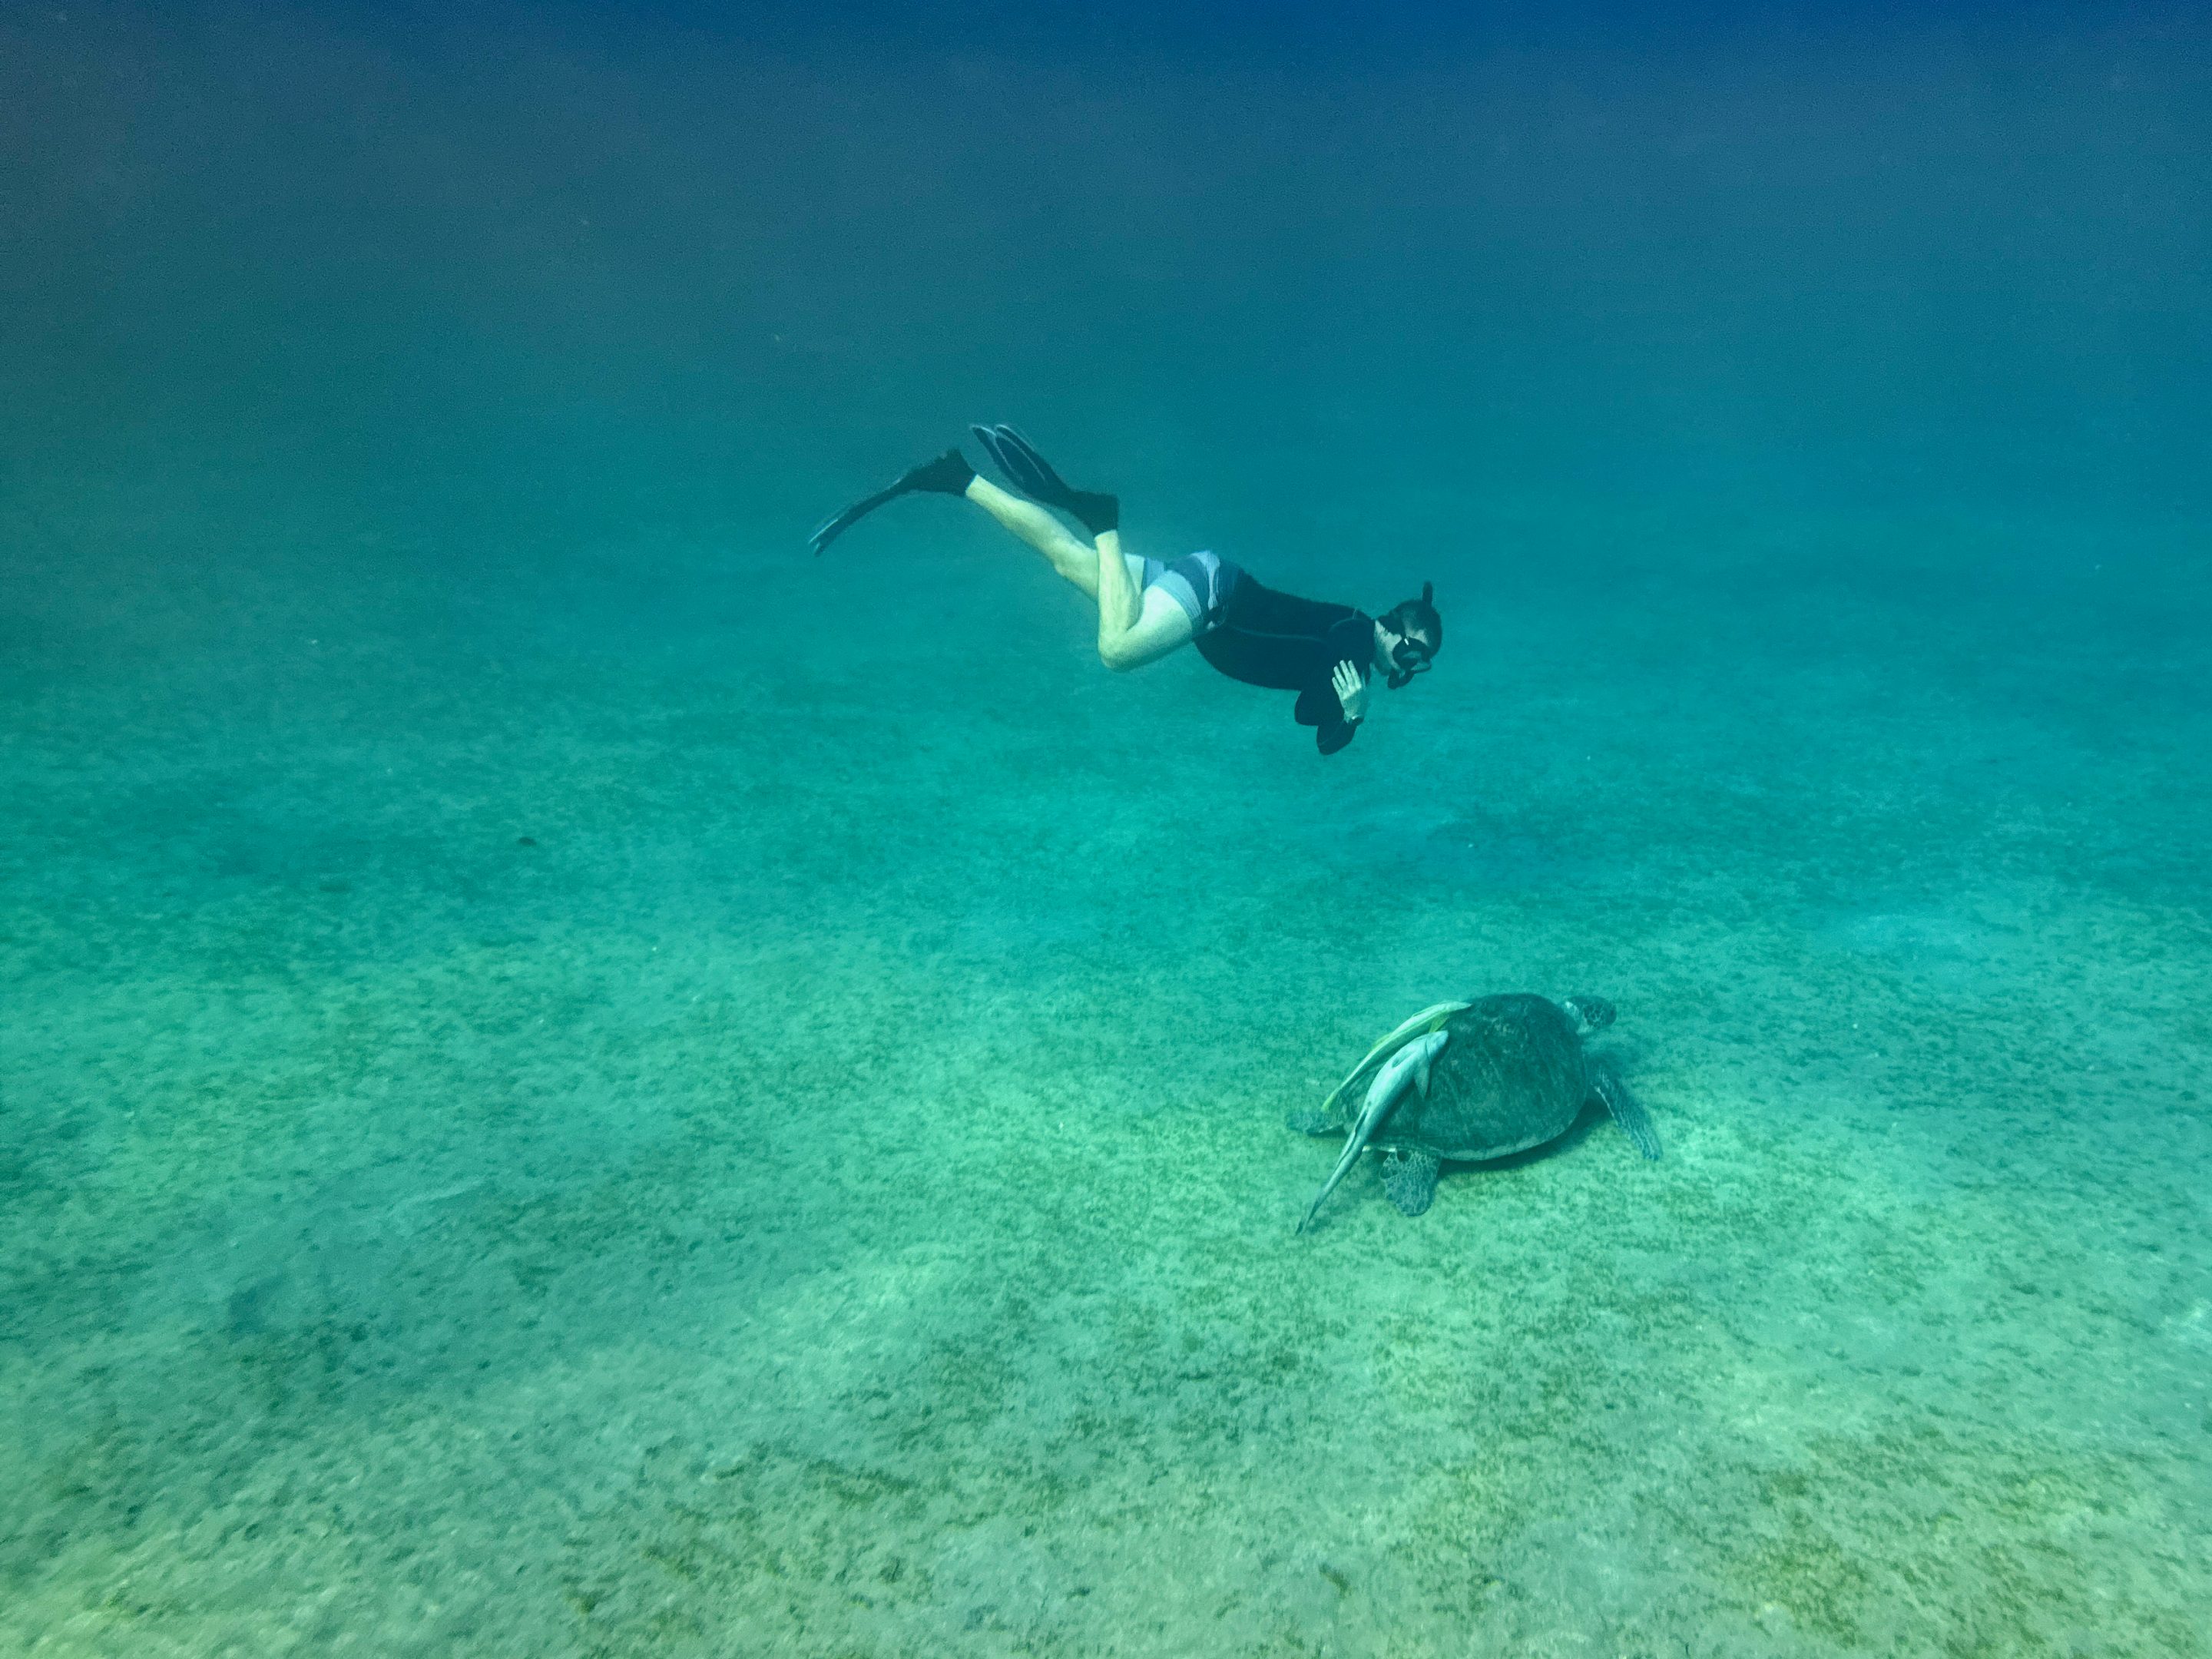 Les tortues sont assises sur les herbiers marins au milieu de la baie. Photo : Sascha Tegtmeyer